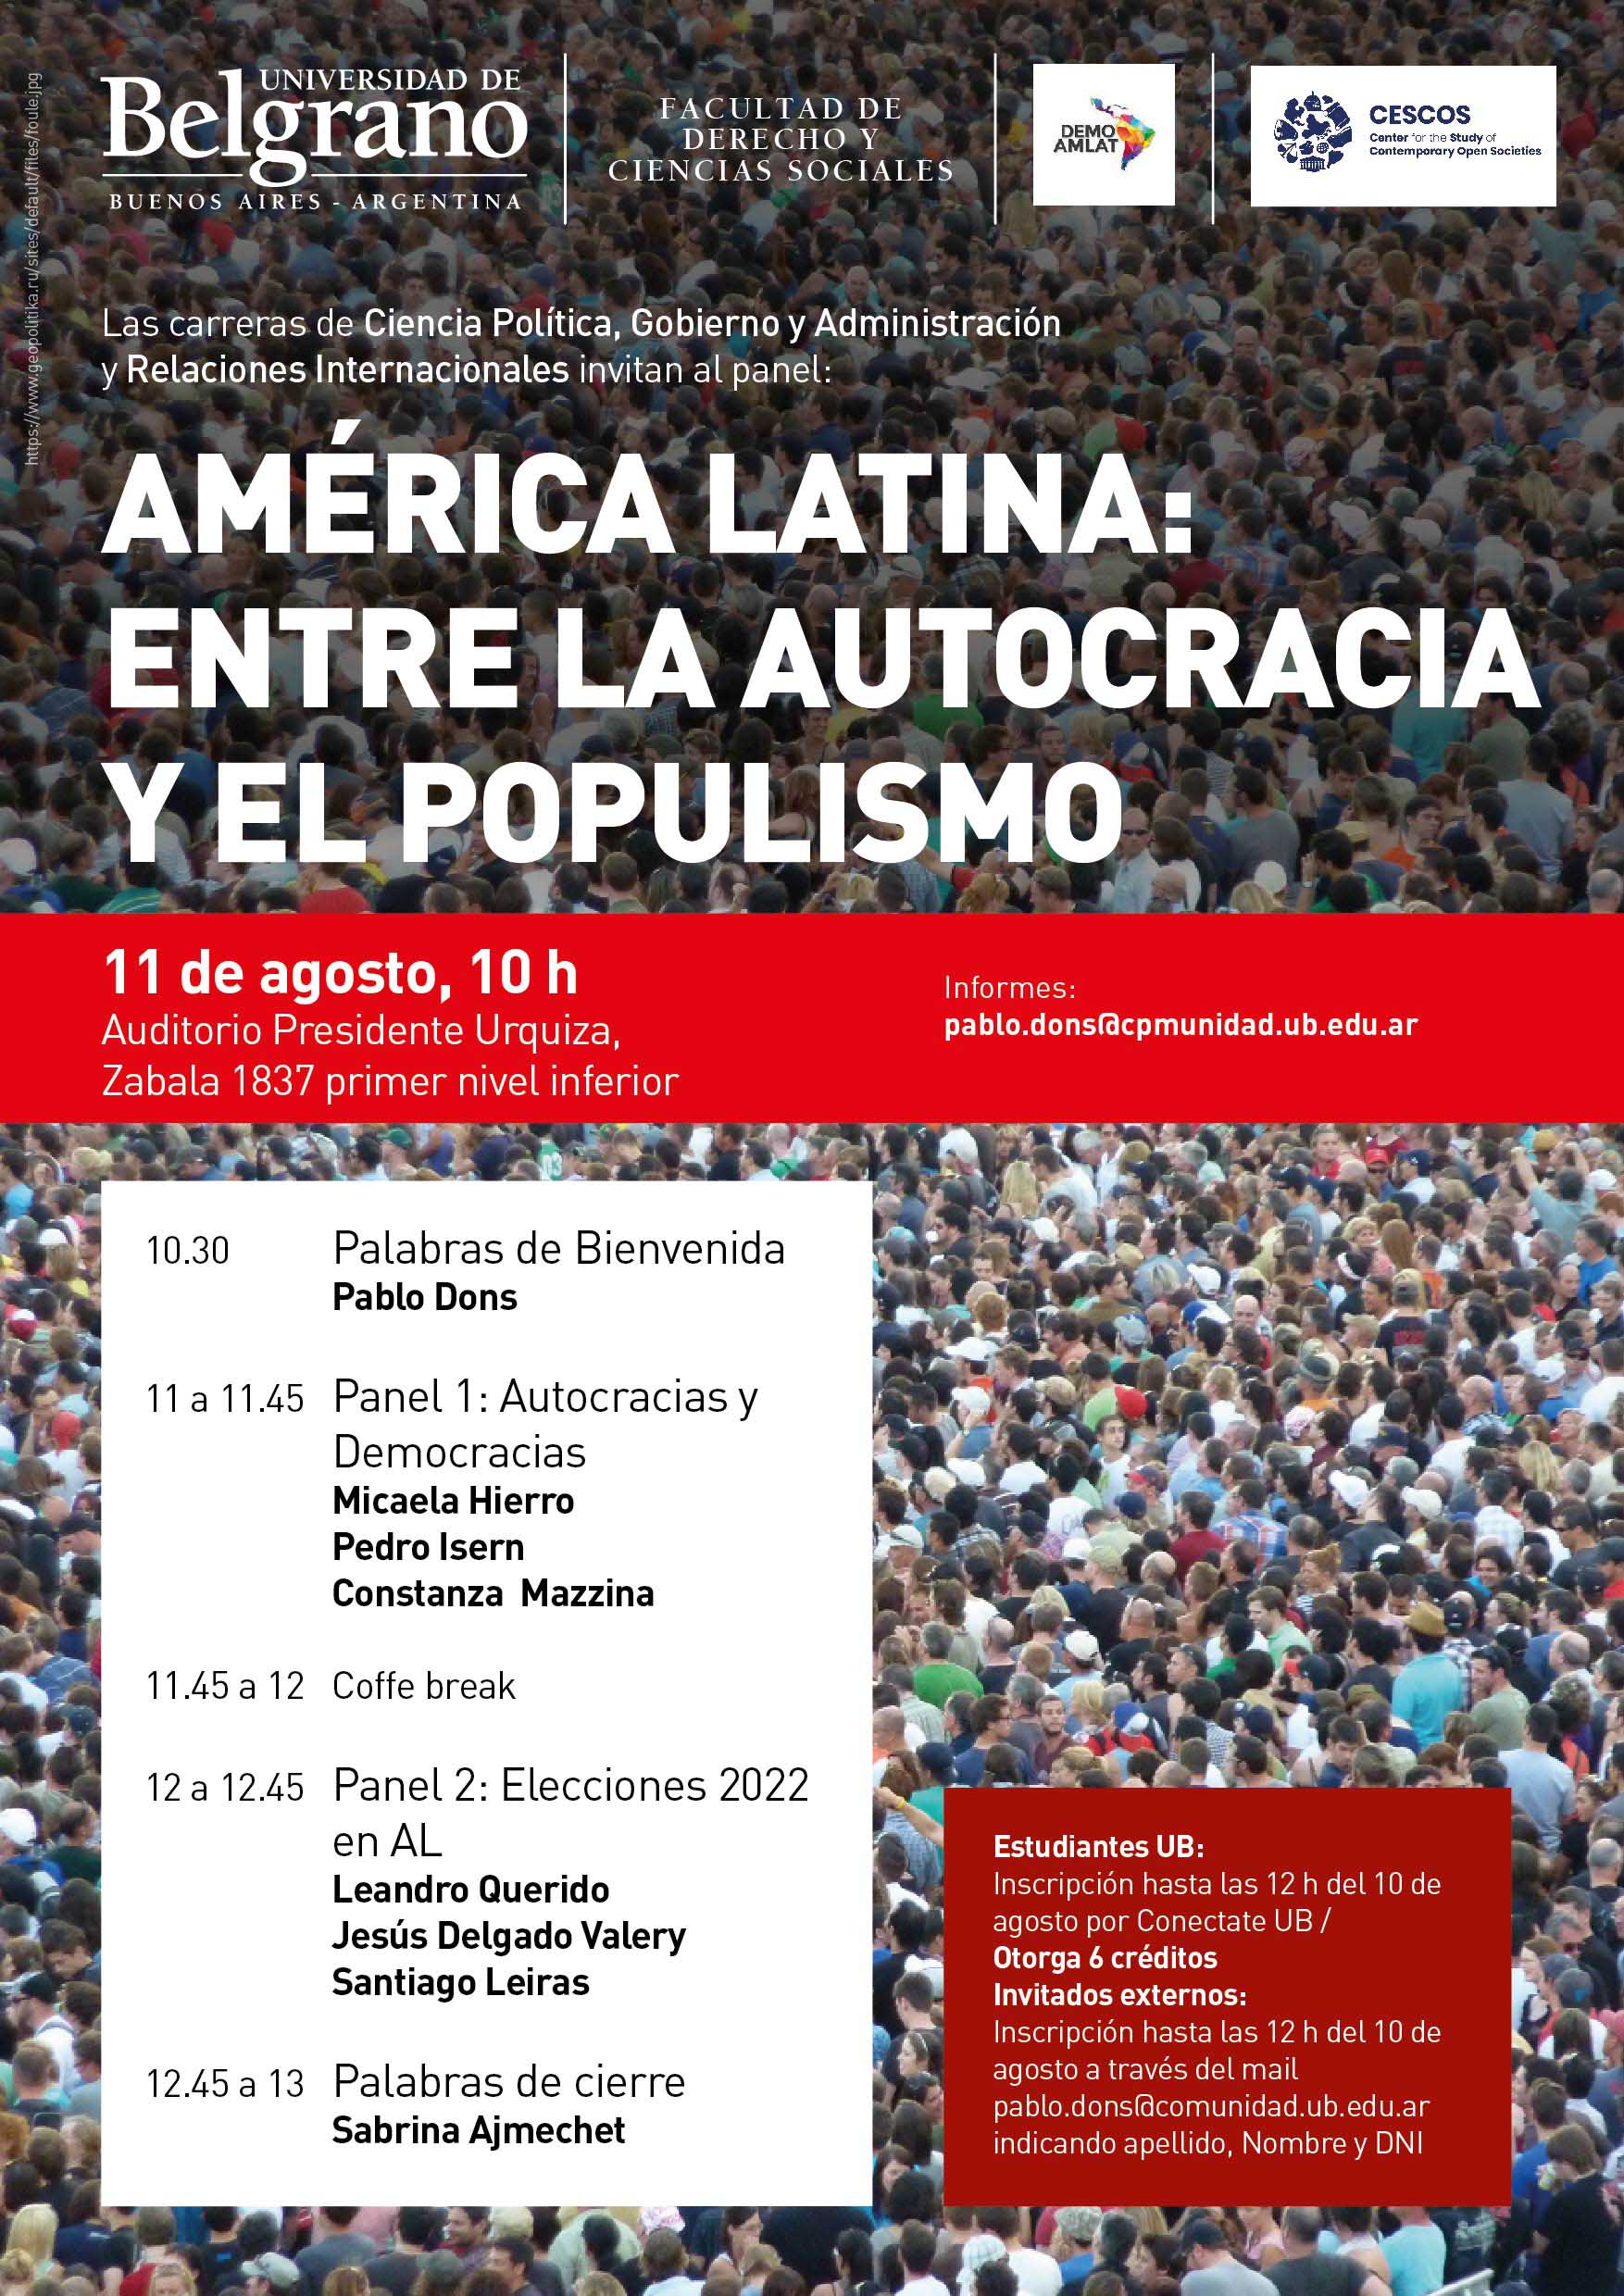 America Latina: Entre la autocracia y el populismo